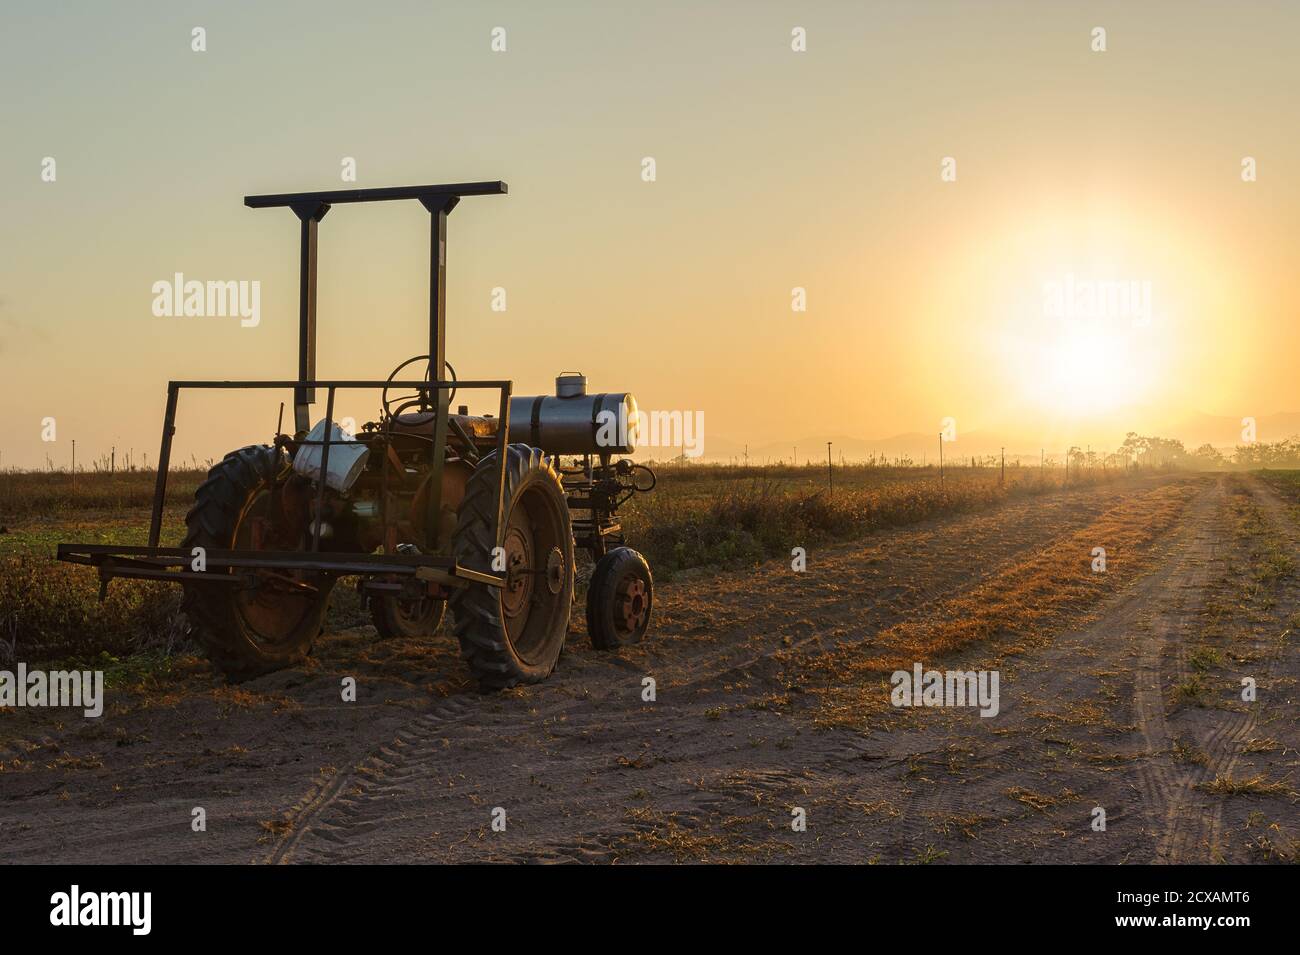 Un vecchio trattore agricolo è inutilizzato, bagnato dalla luce del sole che sorge su una strada sterrata accanto ad un paddock pronto per l'aratura a Mareba, Australia. Foto Stock